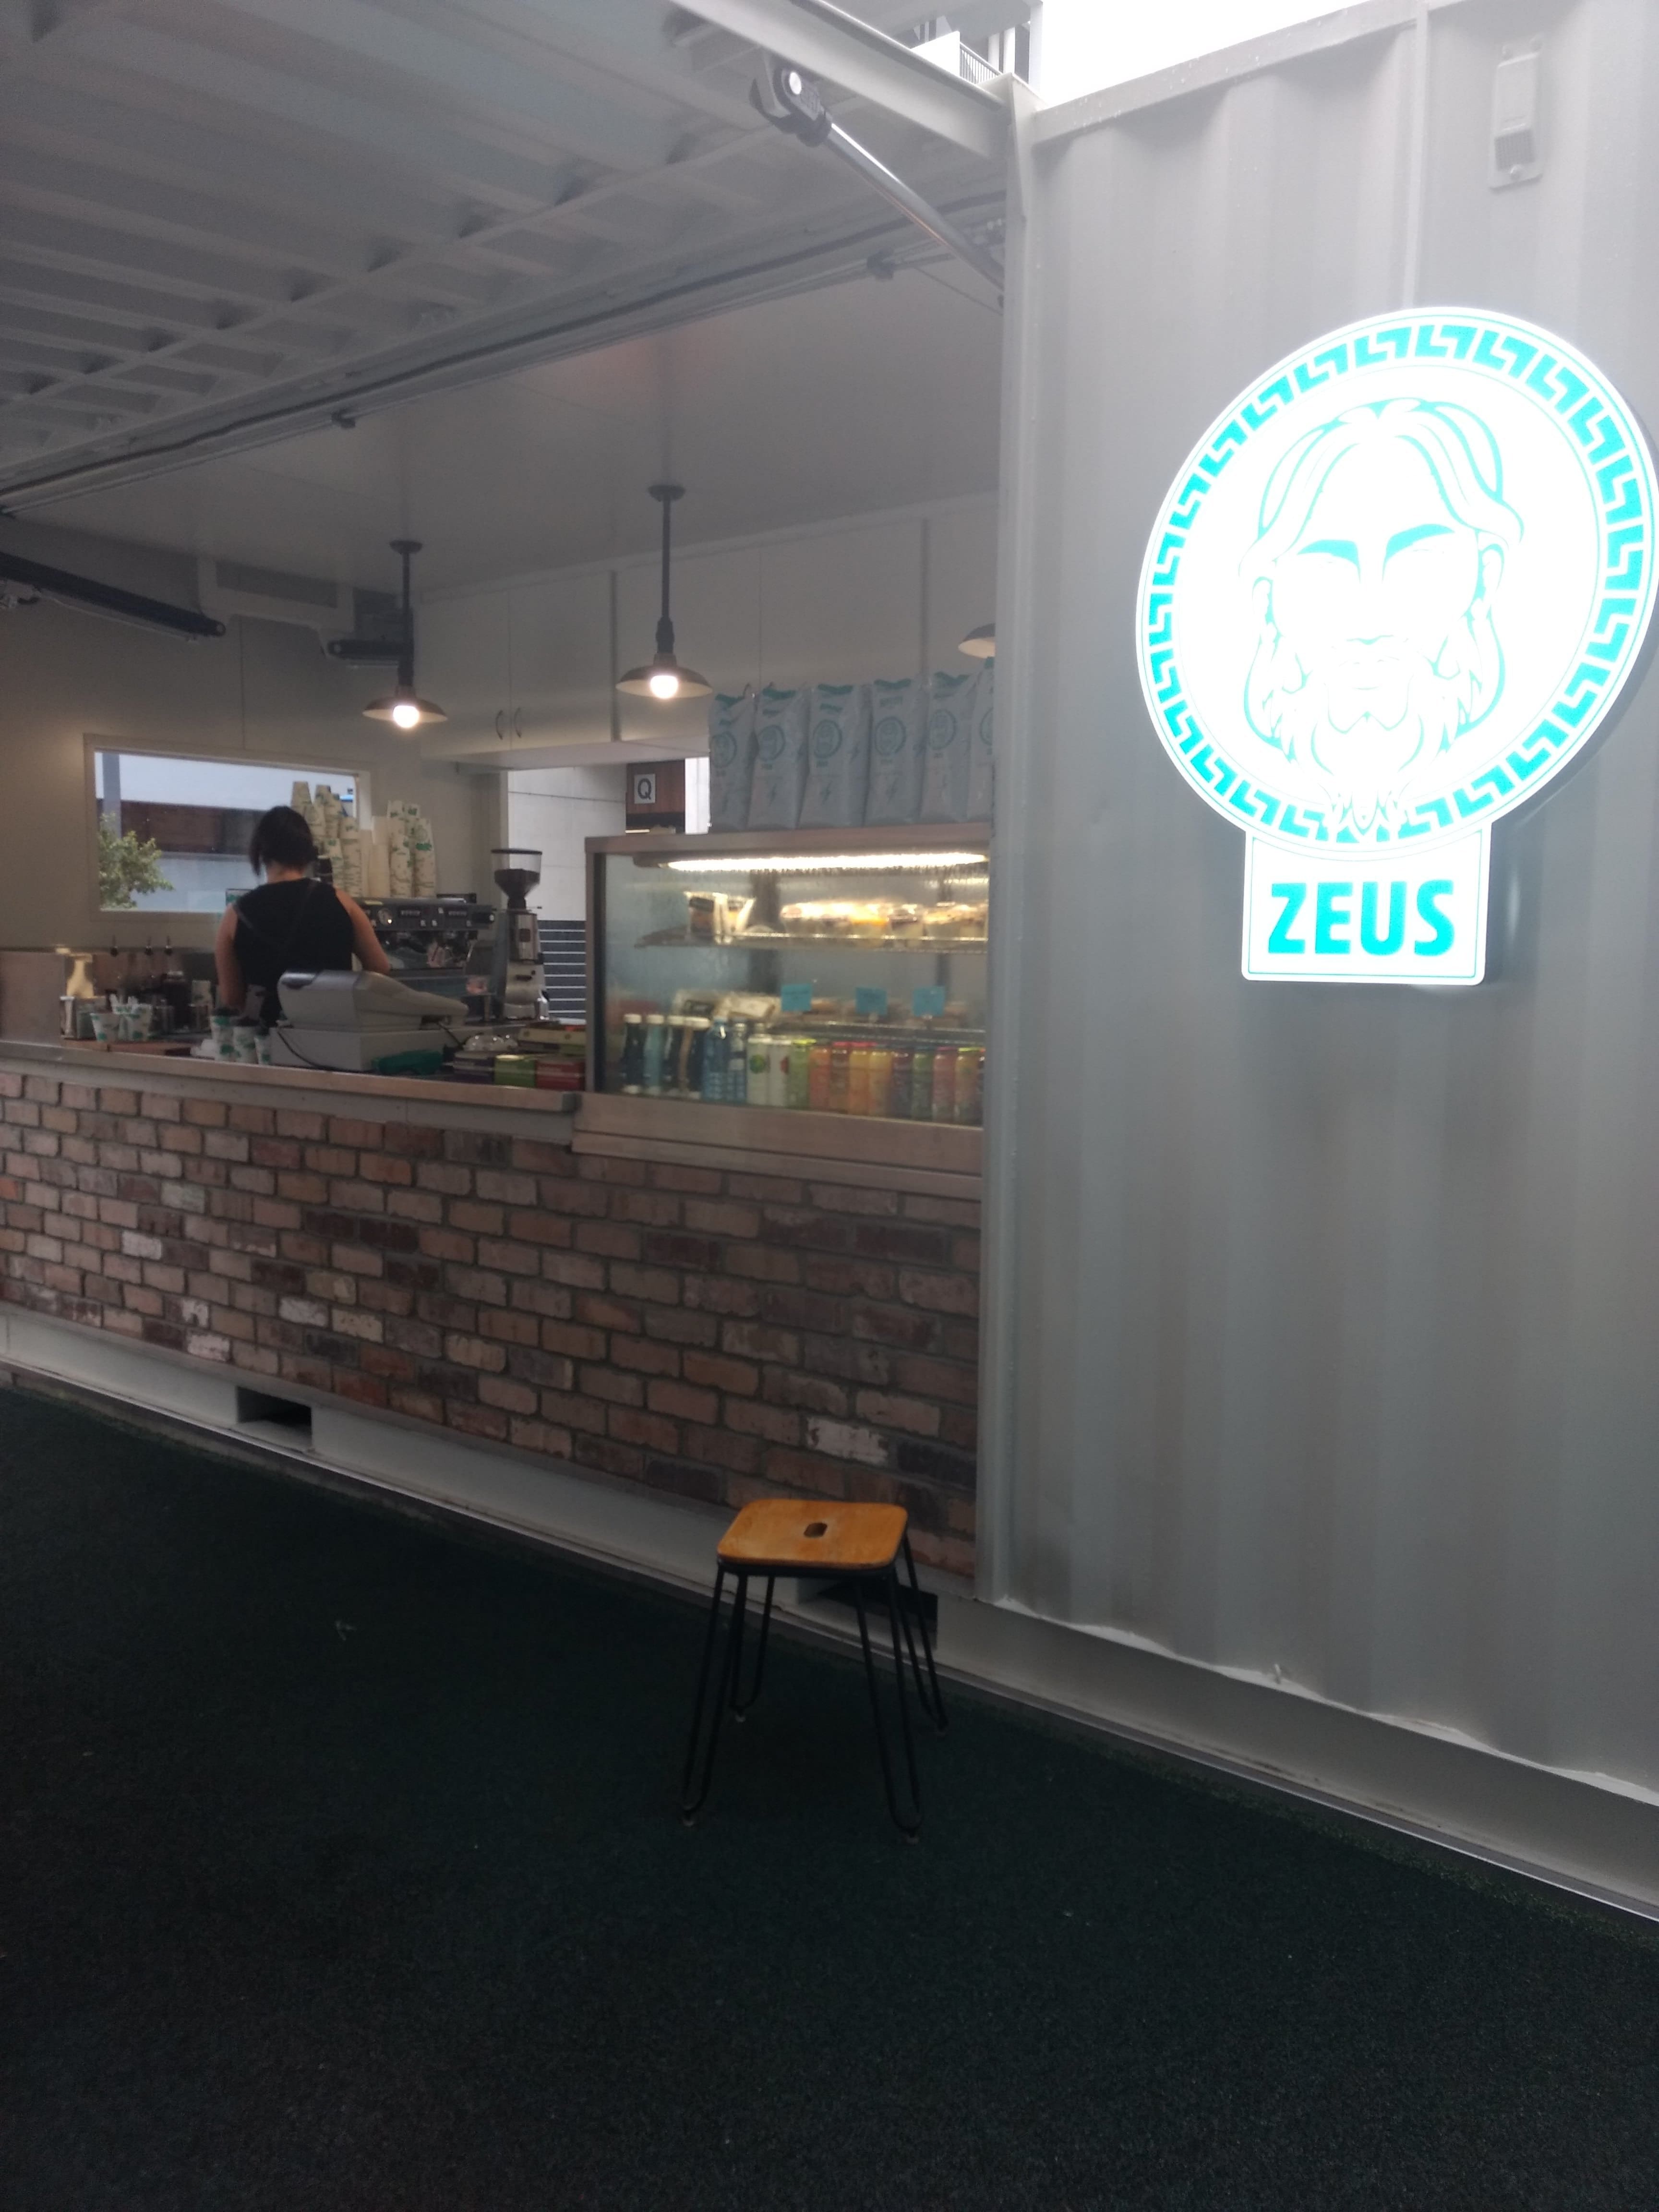 Zeus coffee near me